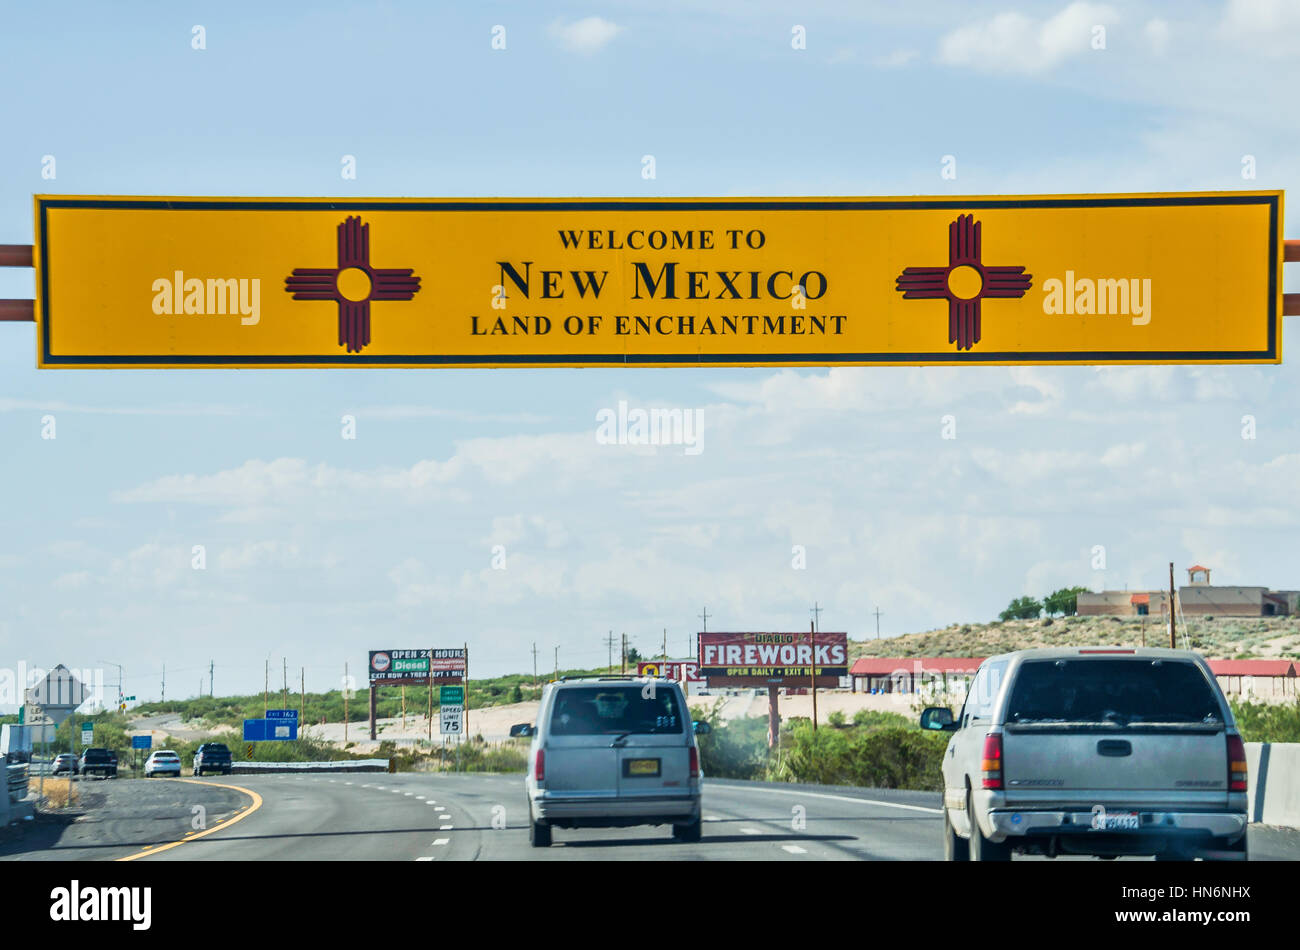 El Paso, USA - 26. Juli 2015: Willkommen in New Mexico Schild mit Land der Verzauberung Wörter auf Autobahn bei Grenze zu Texas Stockfoto